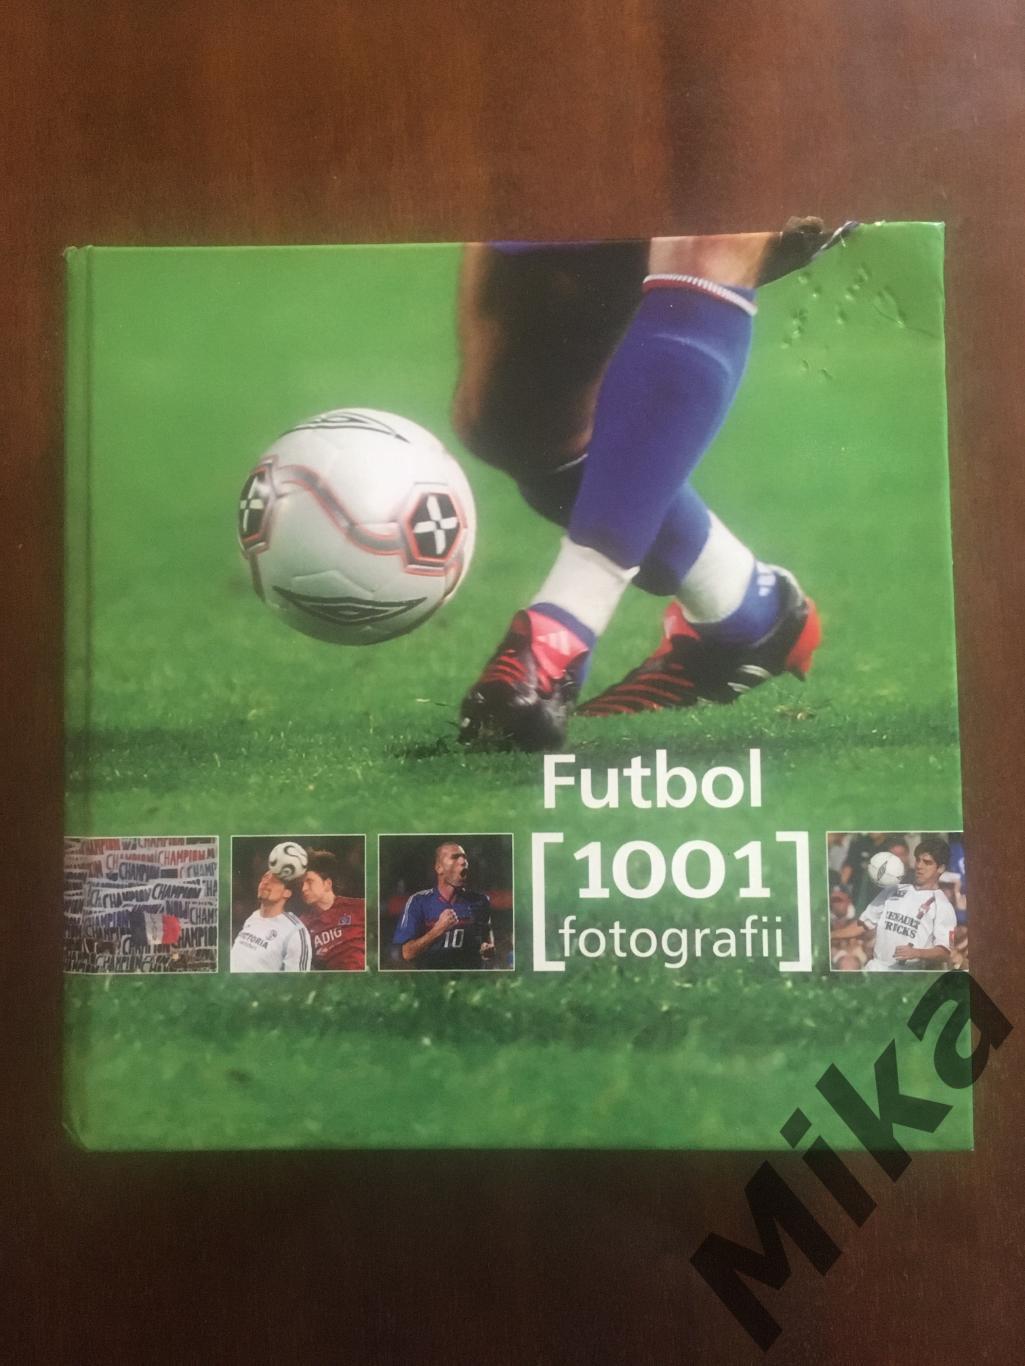 Futbol 1001 fotografii (Польша)